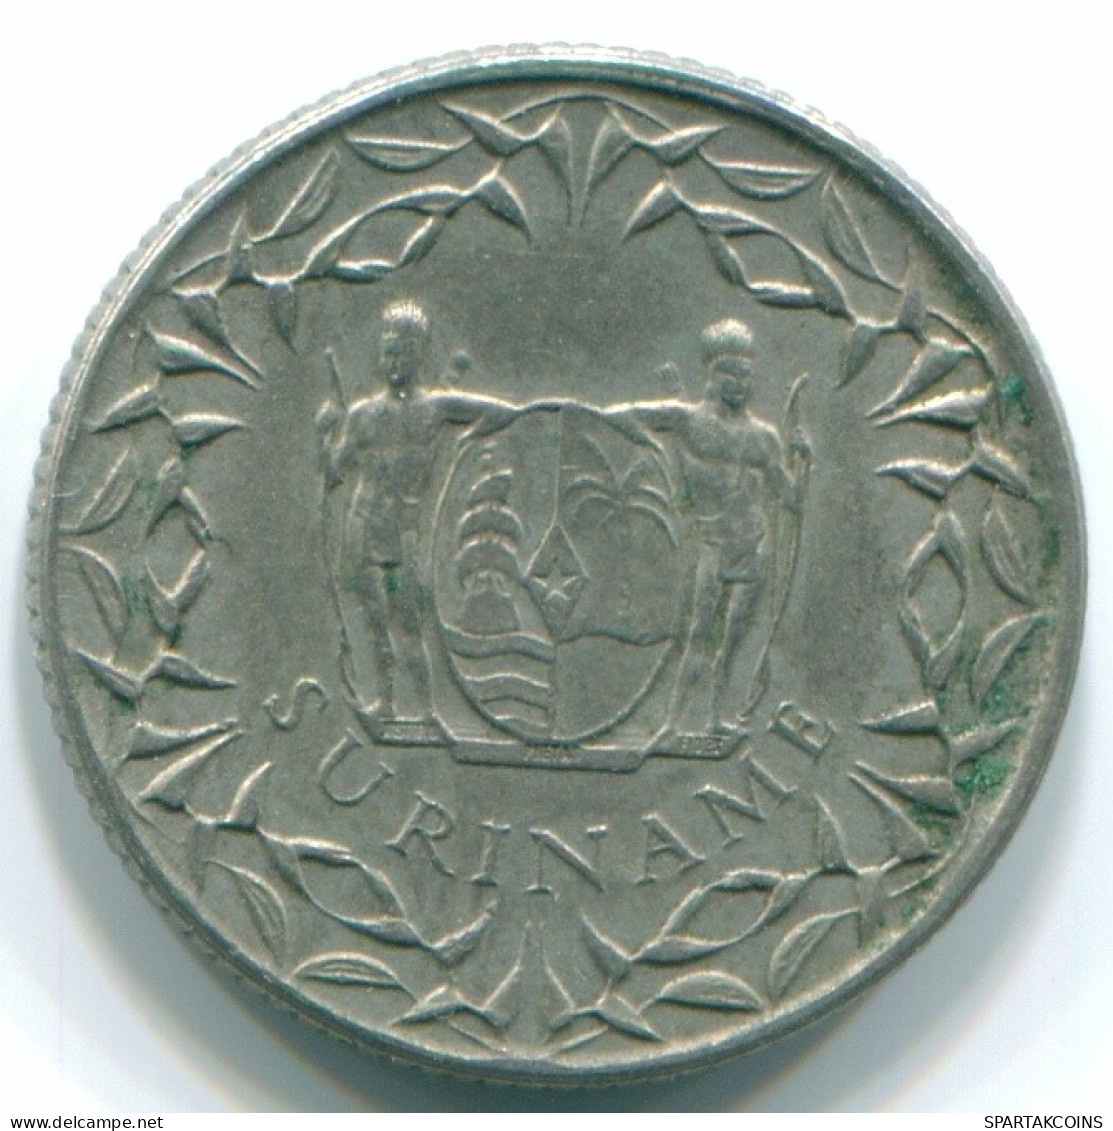 10 CENTS 1962 SURINAM NIEDERLANDE Nickel Koloniale Münze #S13226.D.A - Surinam 1975 - ...